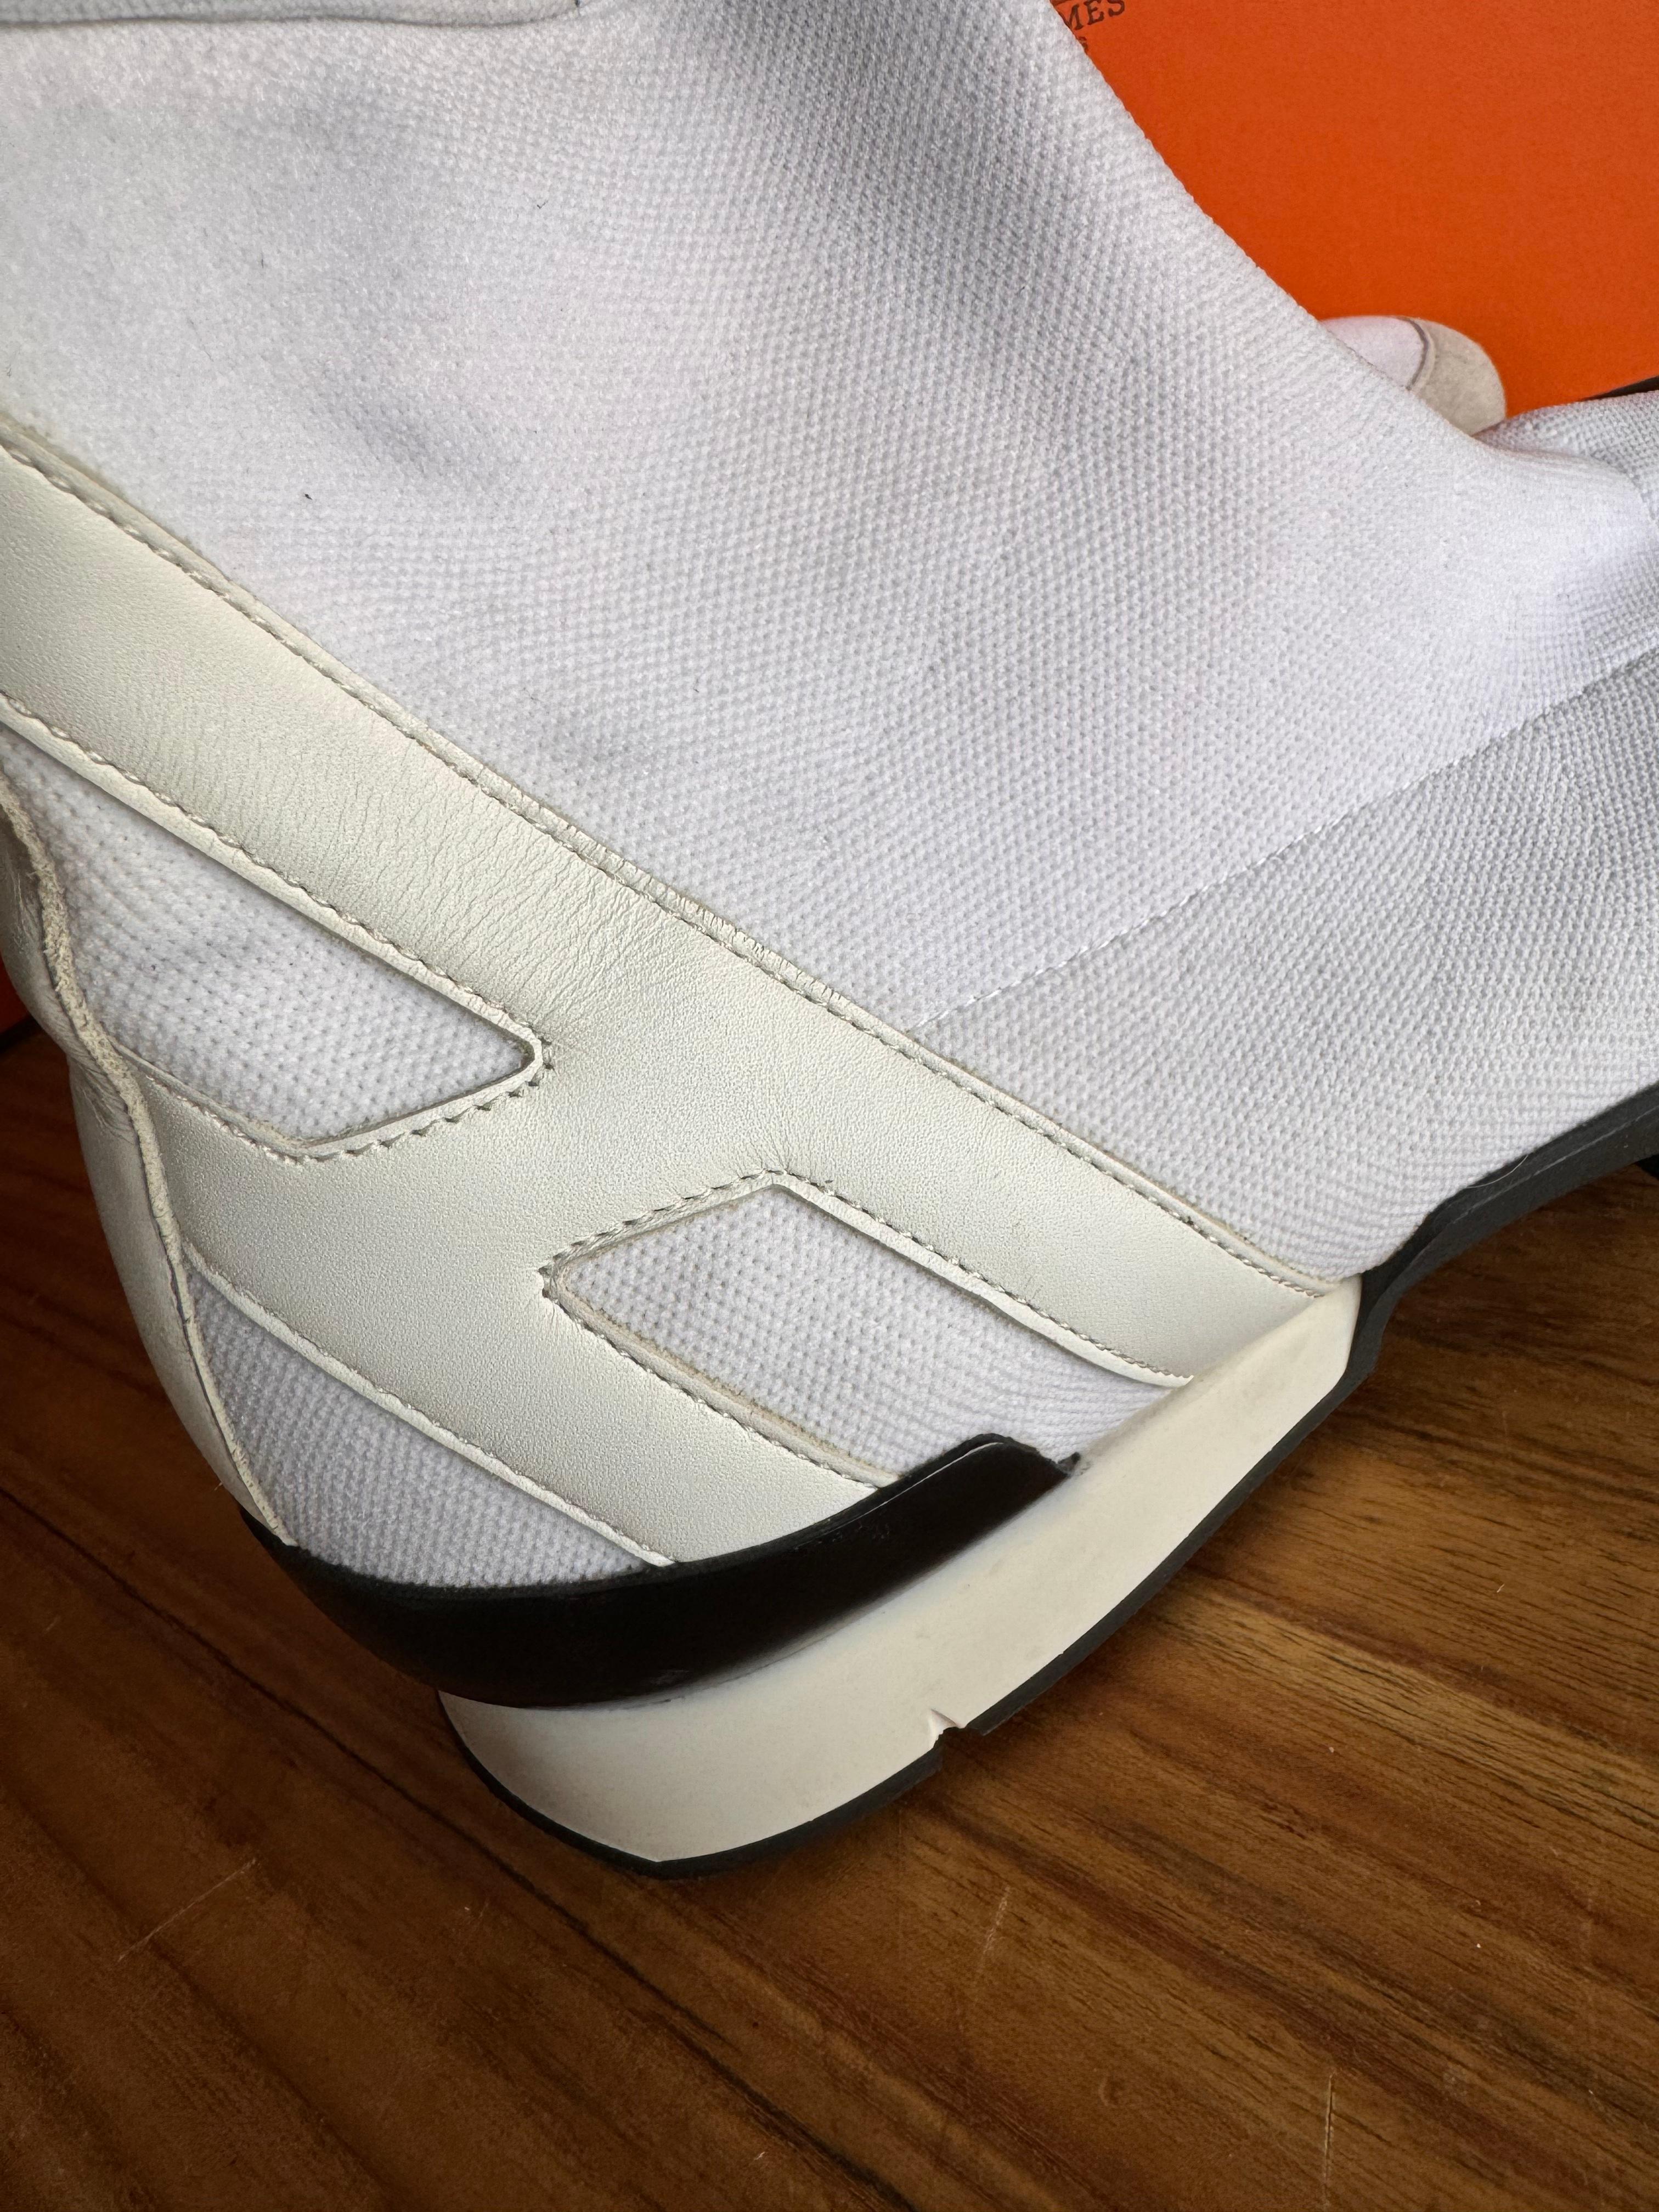 Der Hermès Socks Sneaker ist ein Meisterwerk des zeitgenössischen Schuhdesigns. Diese von der renommierten Luxusmarke Hermès kreierten Sneaker definieren die Grenzen der lässigen Eleganz neu. Mit ihrer makellosen weißen Farbe strahlen sie Reinheit